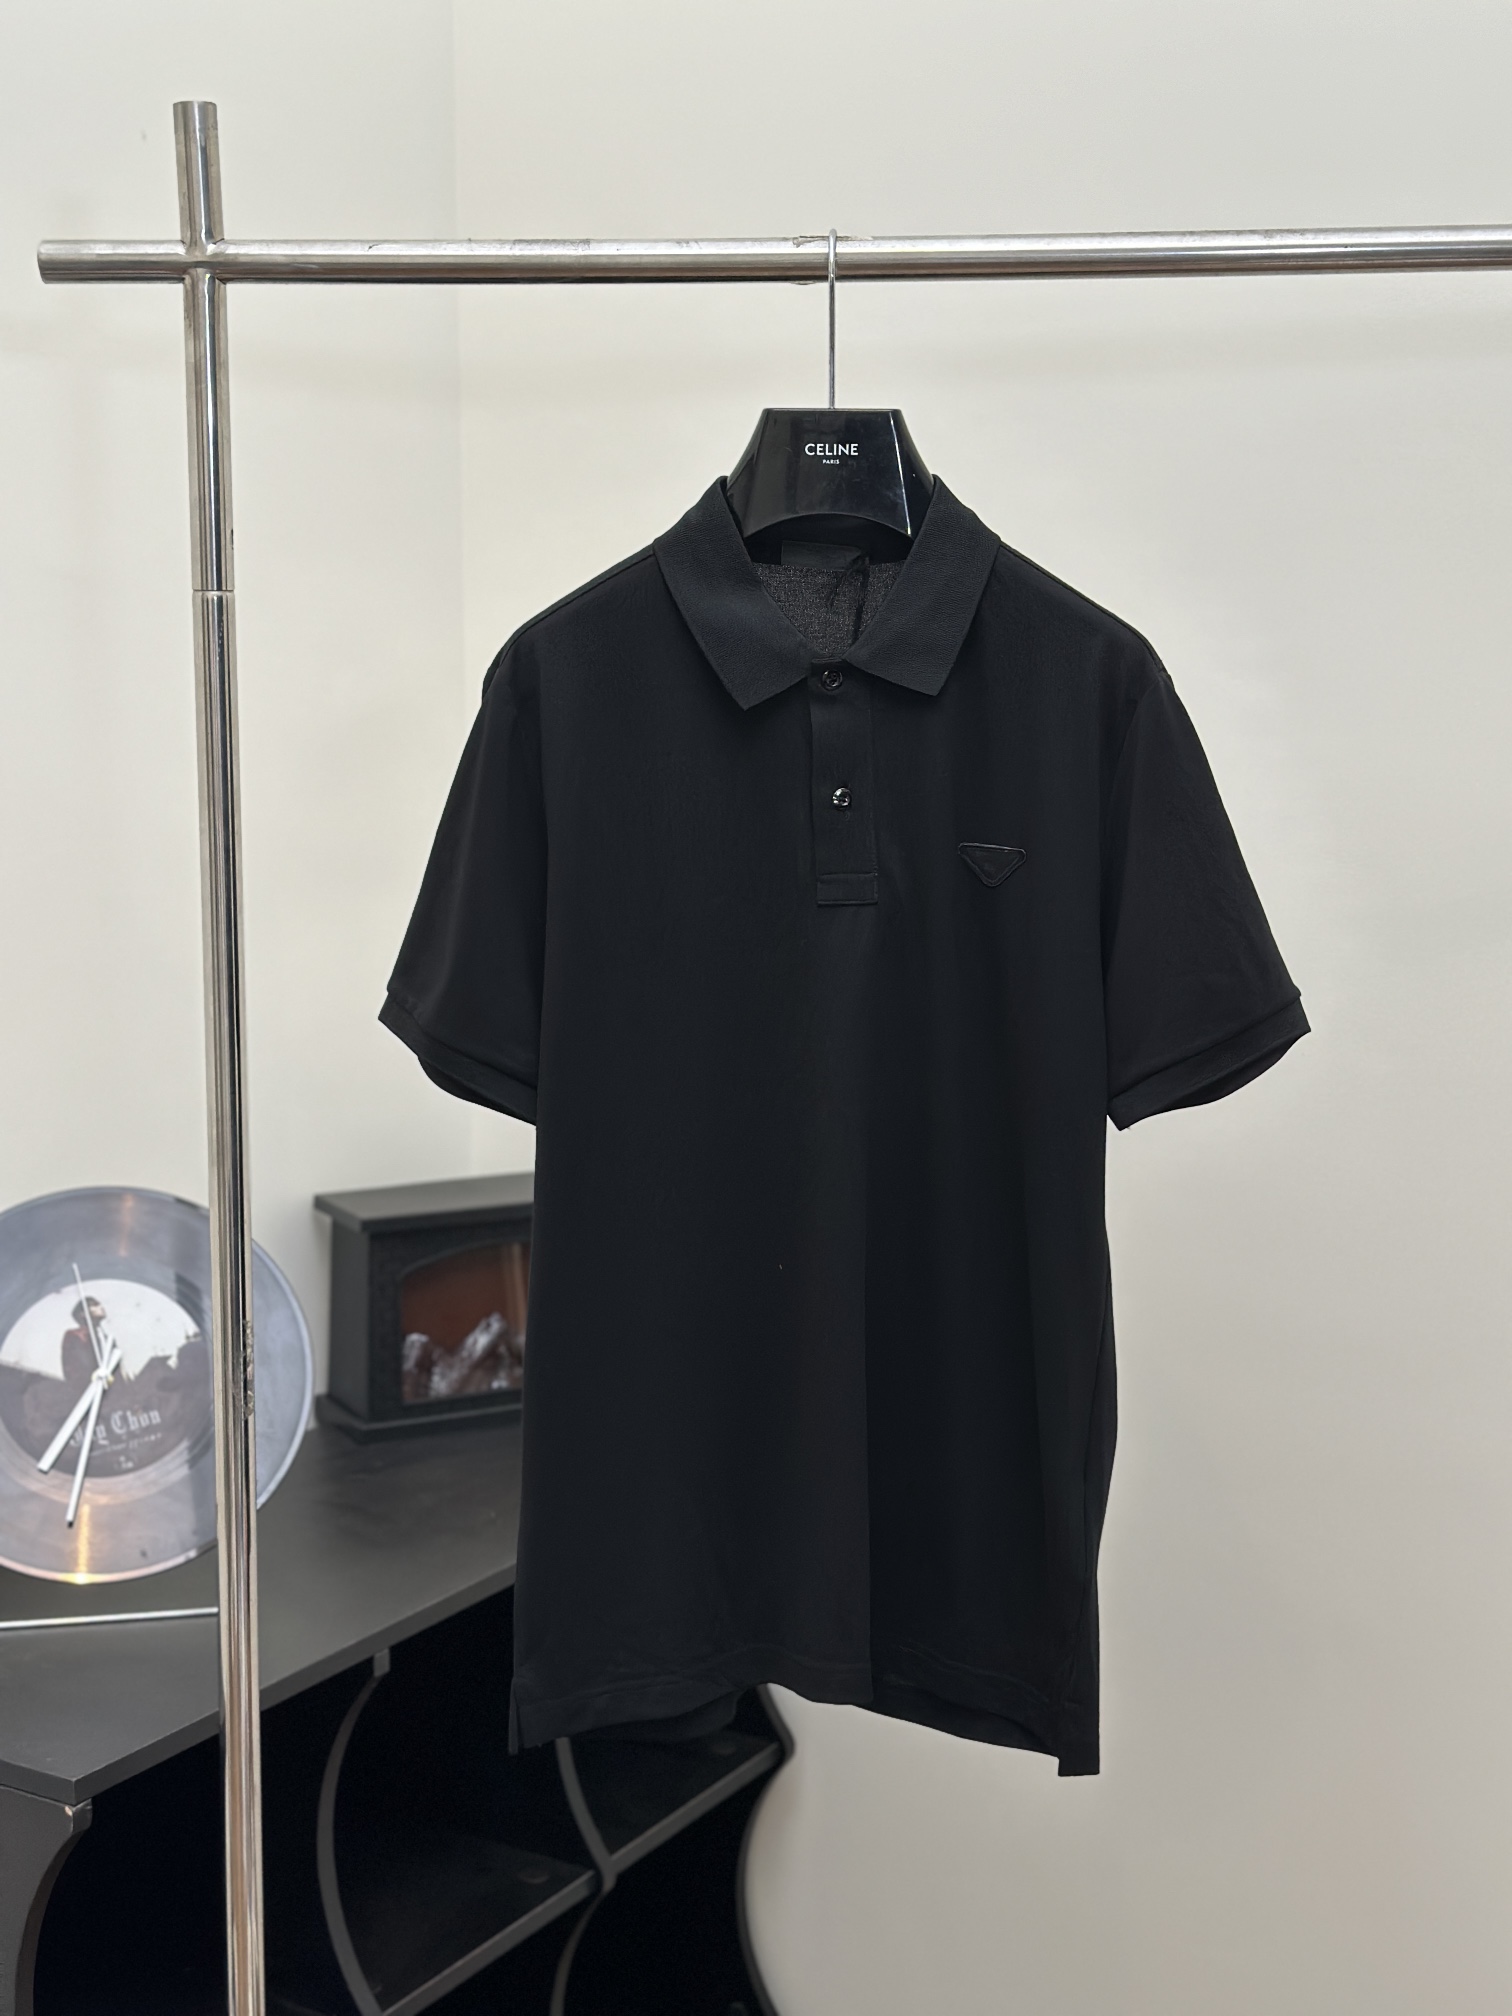 Prada Clothing Polo T-Shirt Men Cotton Nylon Spring/Summer Collection Short Sleeve